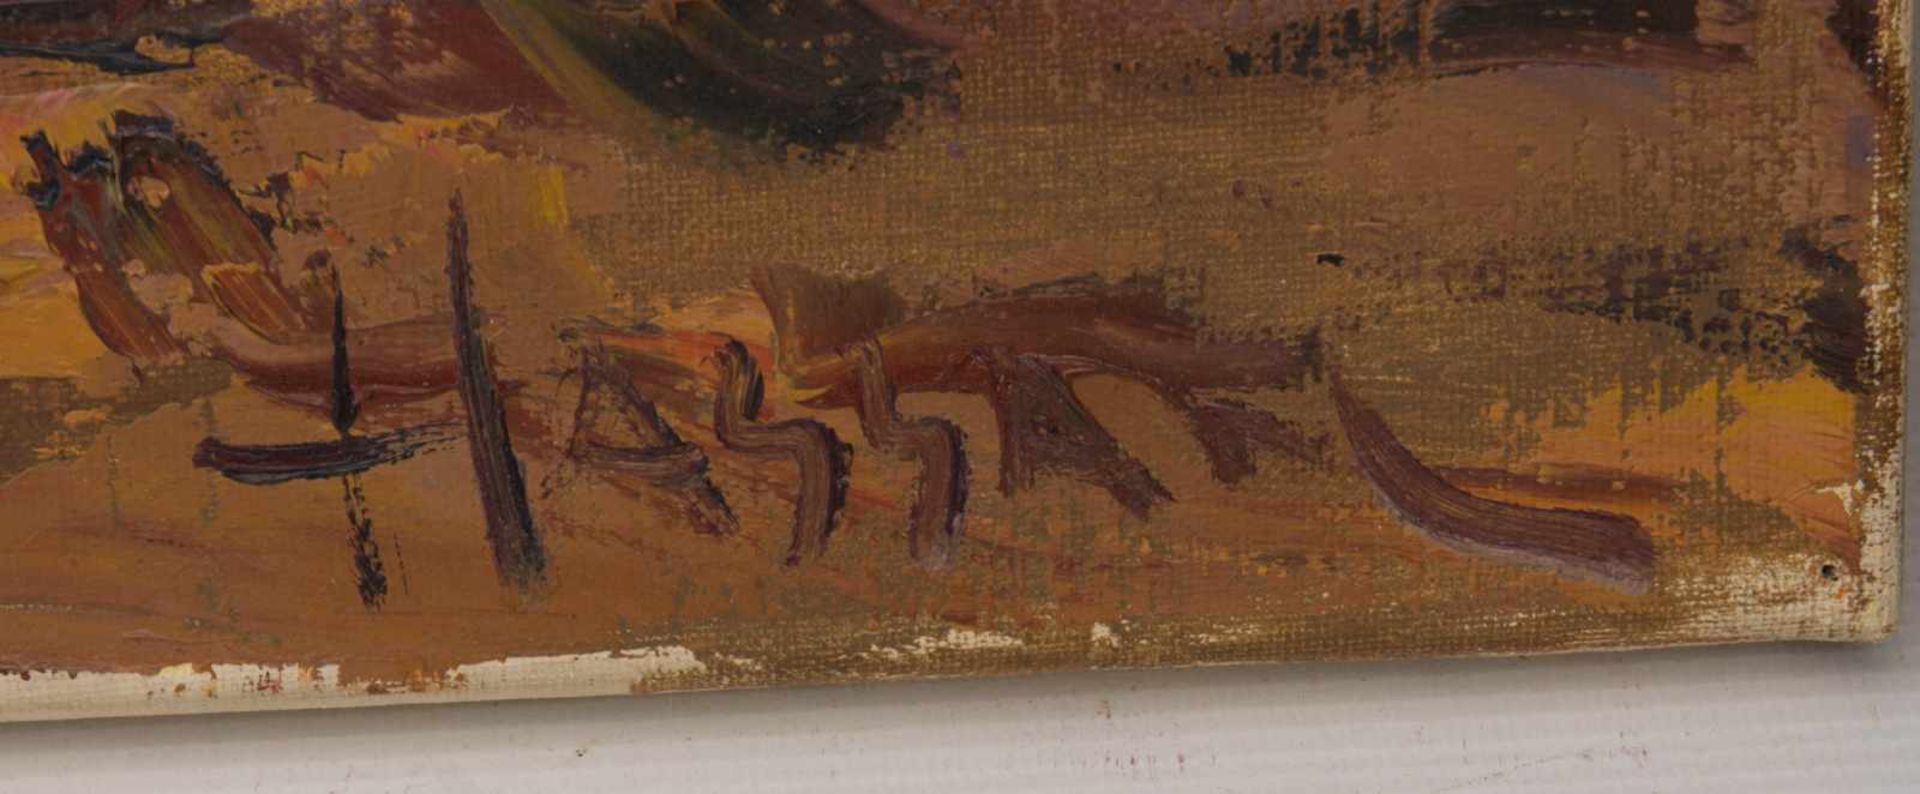 HASSAN, LEBEN IN DER OASE, Öl auf Leinwand, ungerahmt, signiert.Rechts unten signiert "Hassan".60 - Bild 2 aus 5